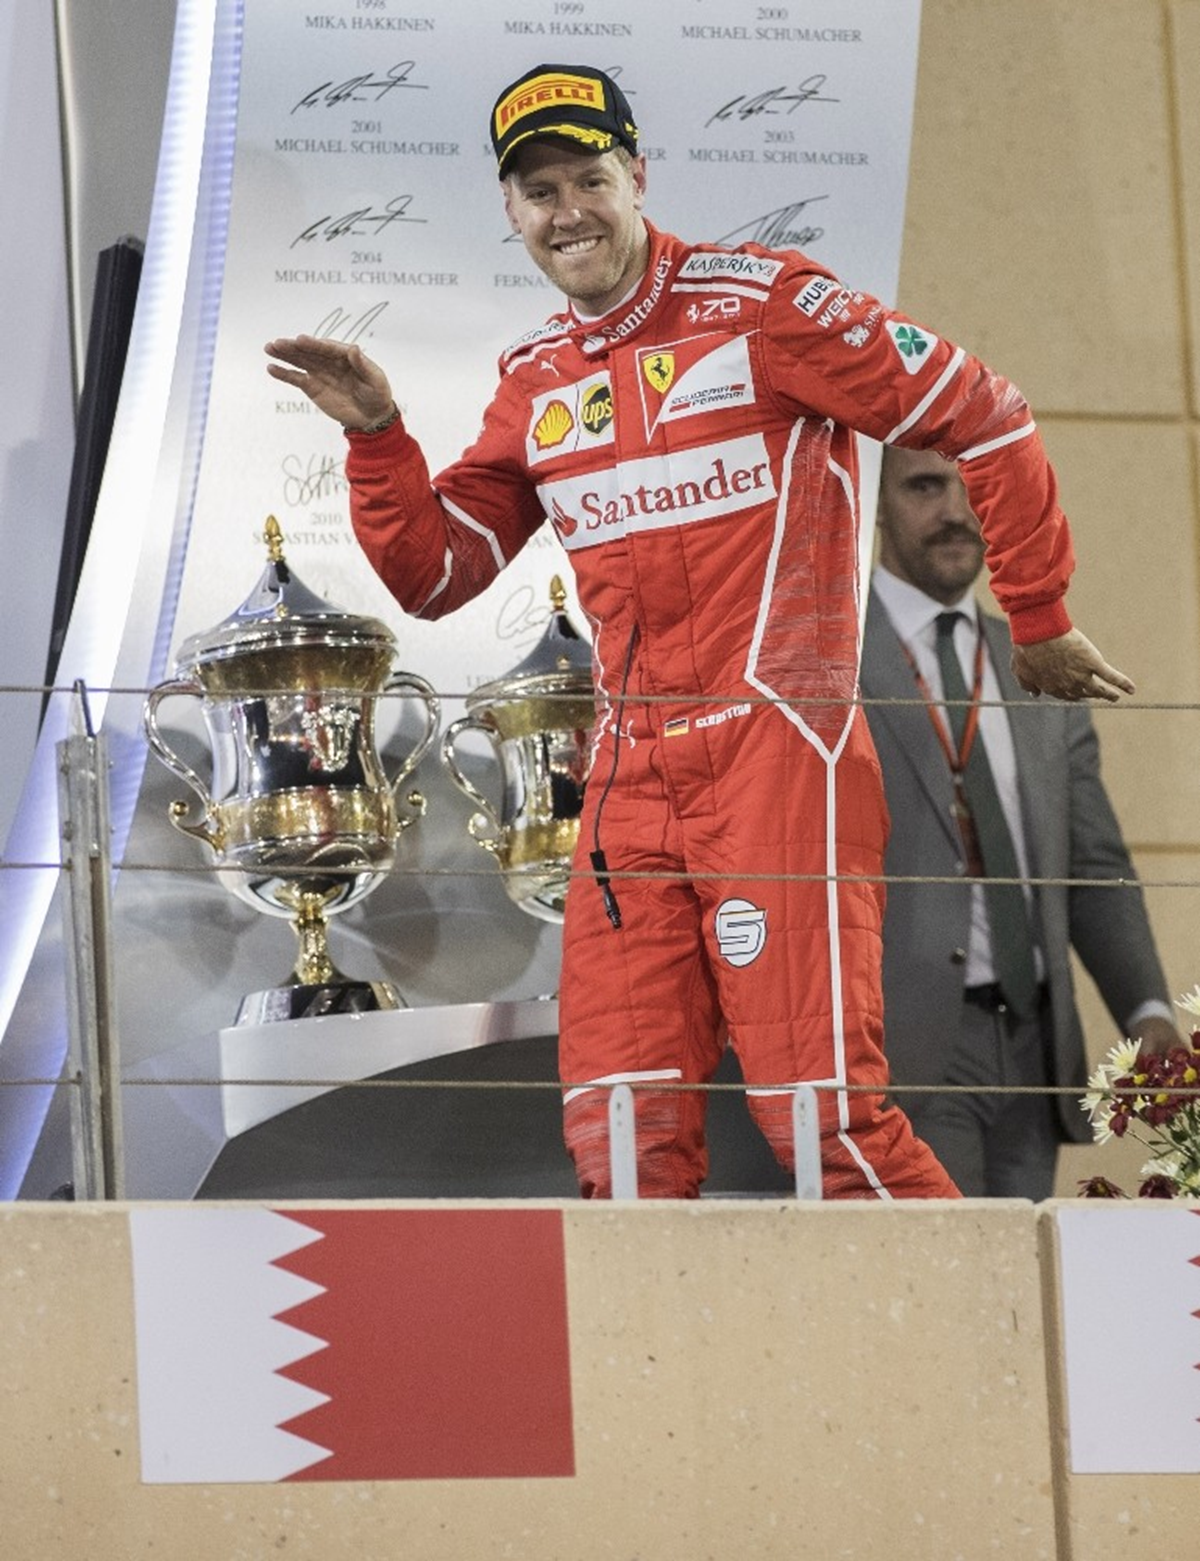 Ferrari'de Vettel dnemi sona eriyor